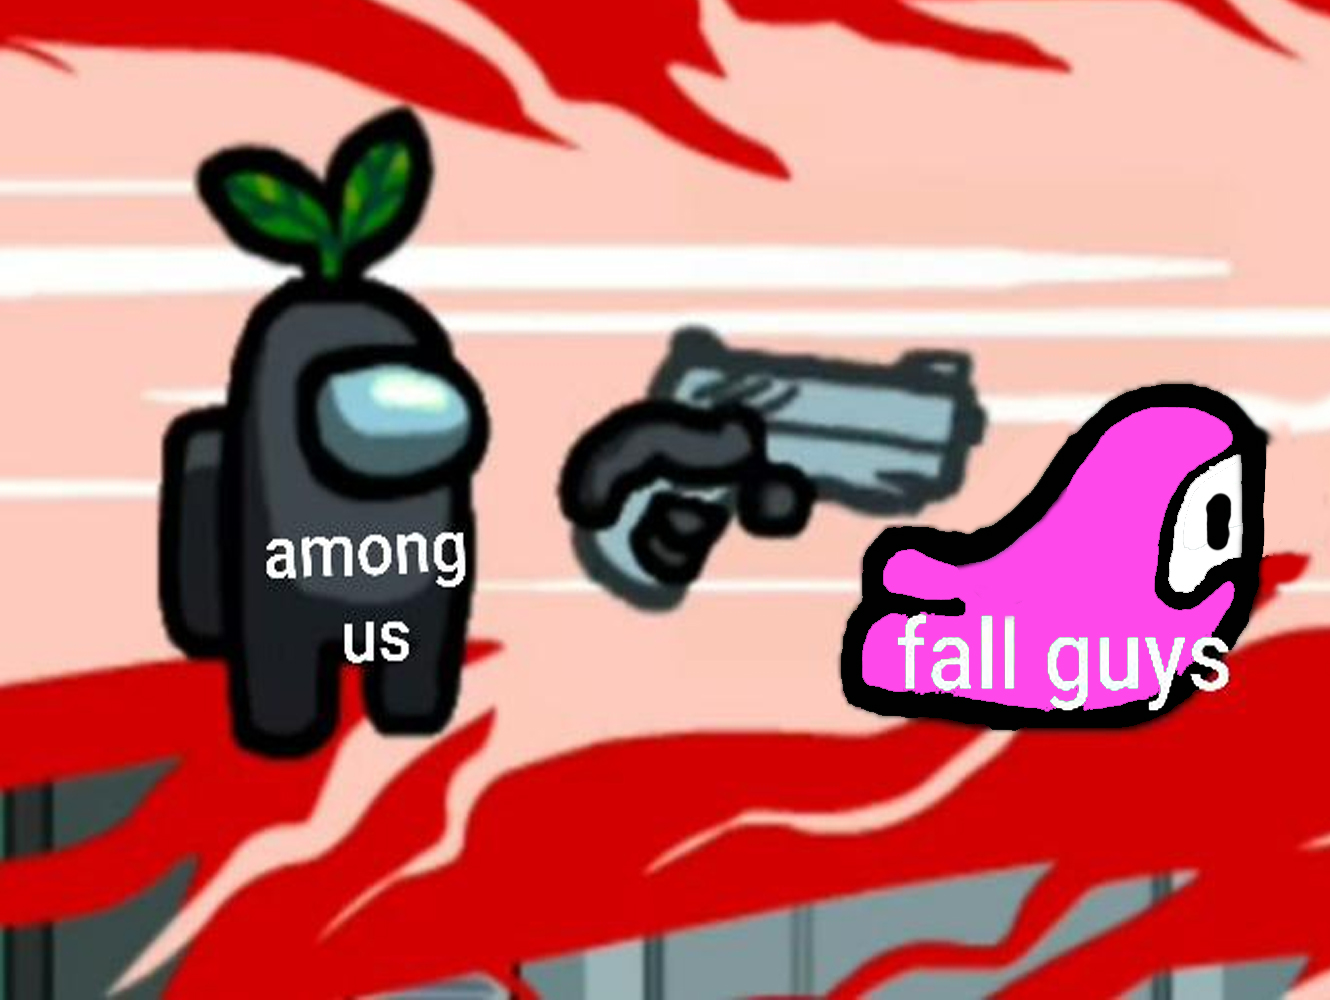 Among Us kills fall guys